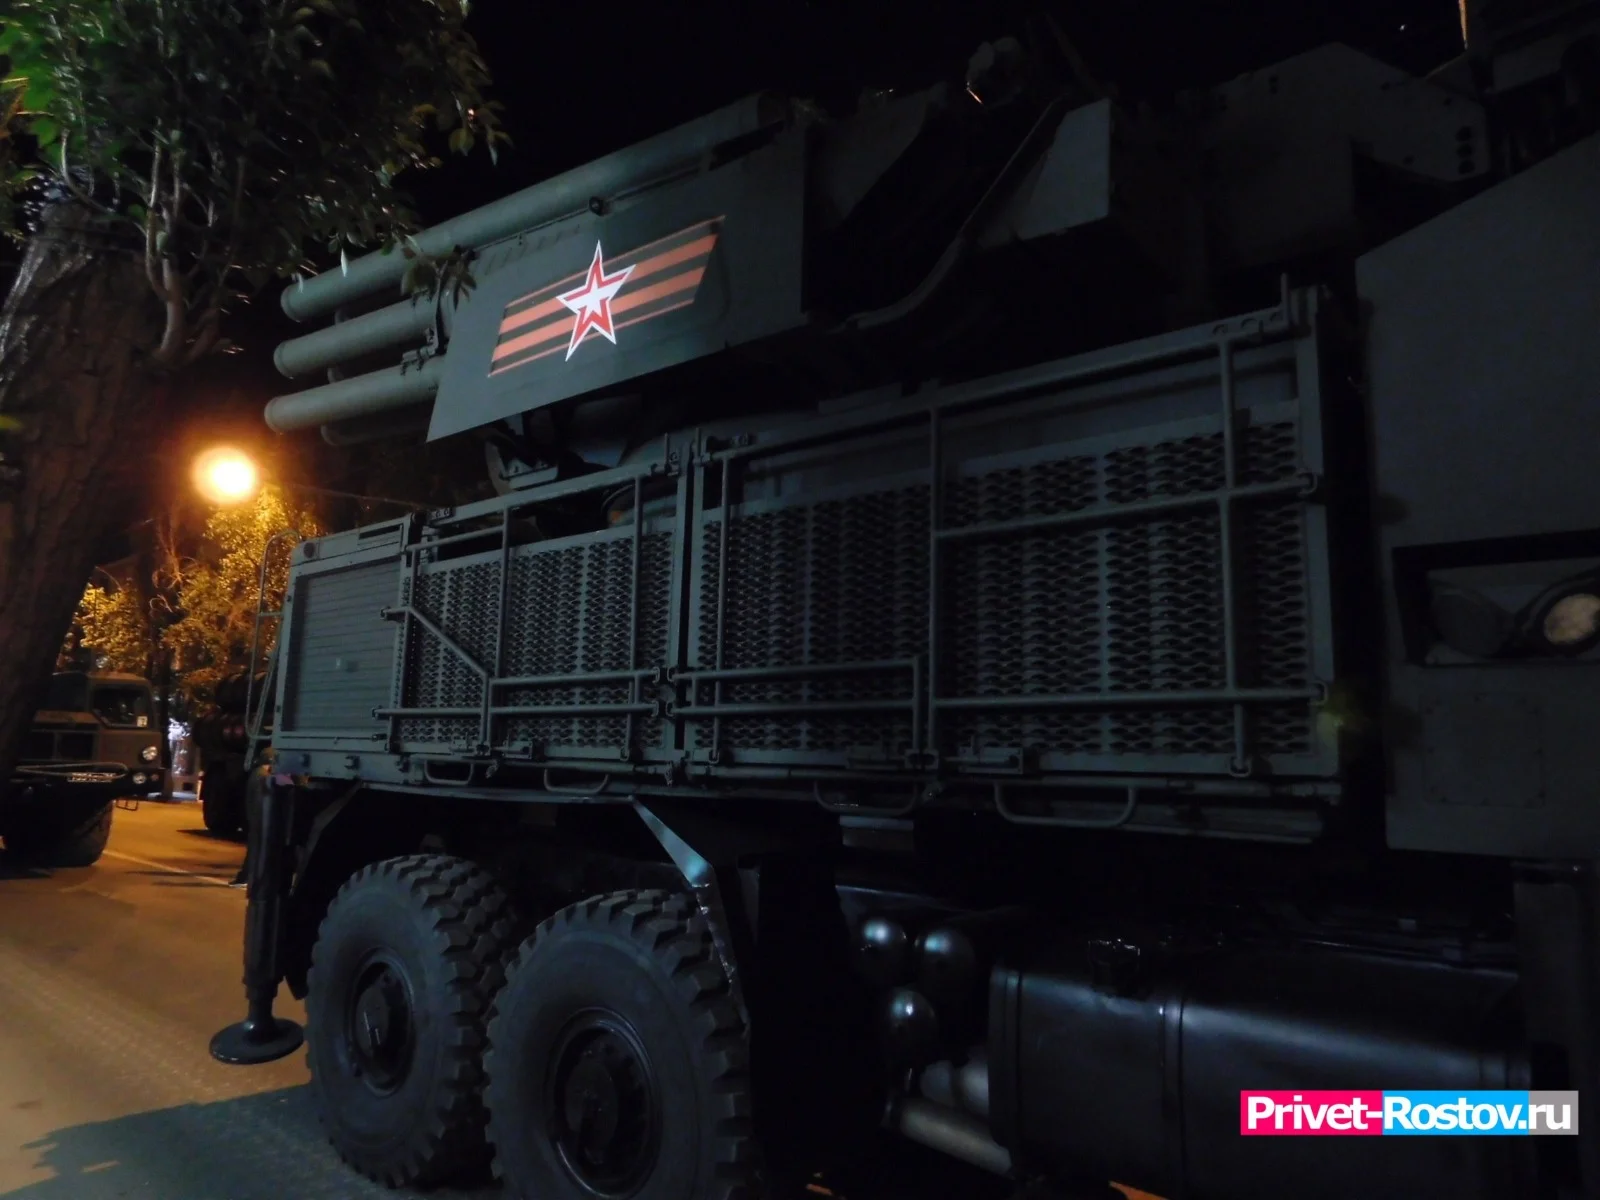 Политолог Сухарь разъяснил цели удара ракетой ВСУ в Морозовске вечером 25 мая